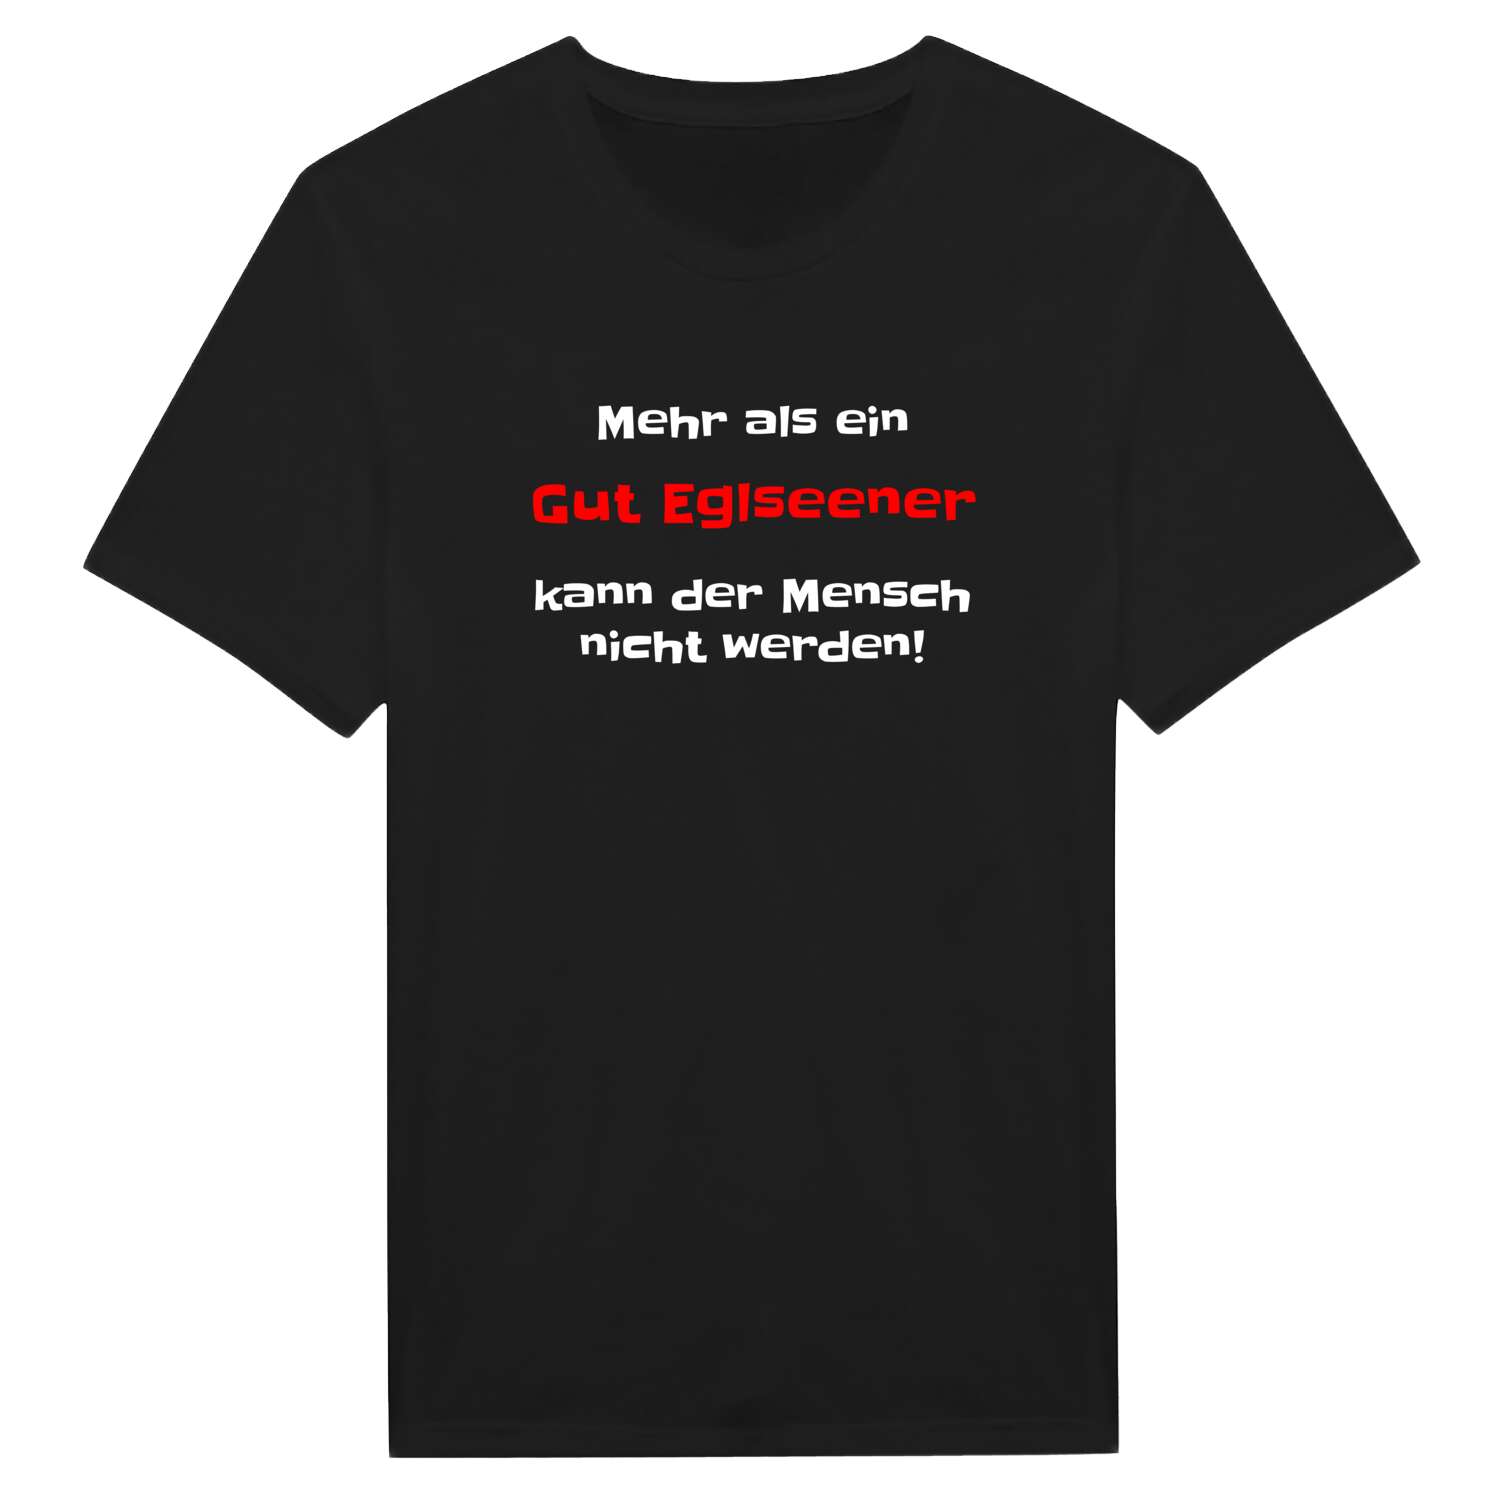 Gut Eglsee T-Shirt »Mehr als ein«